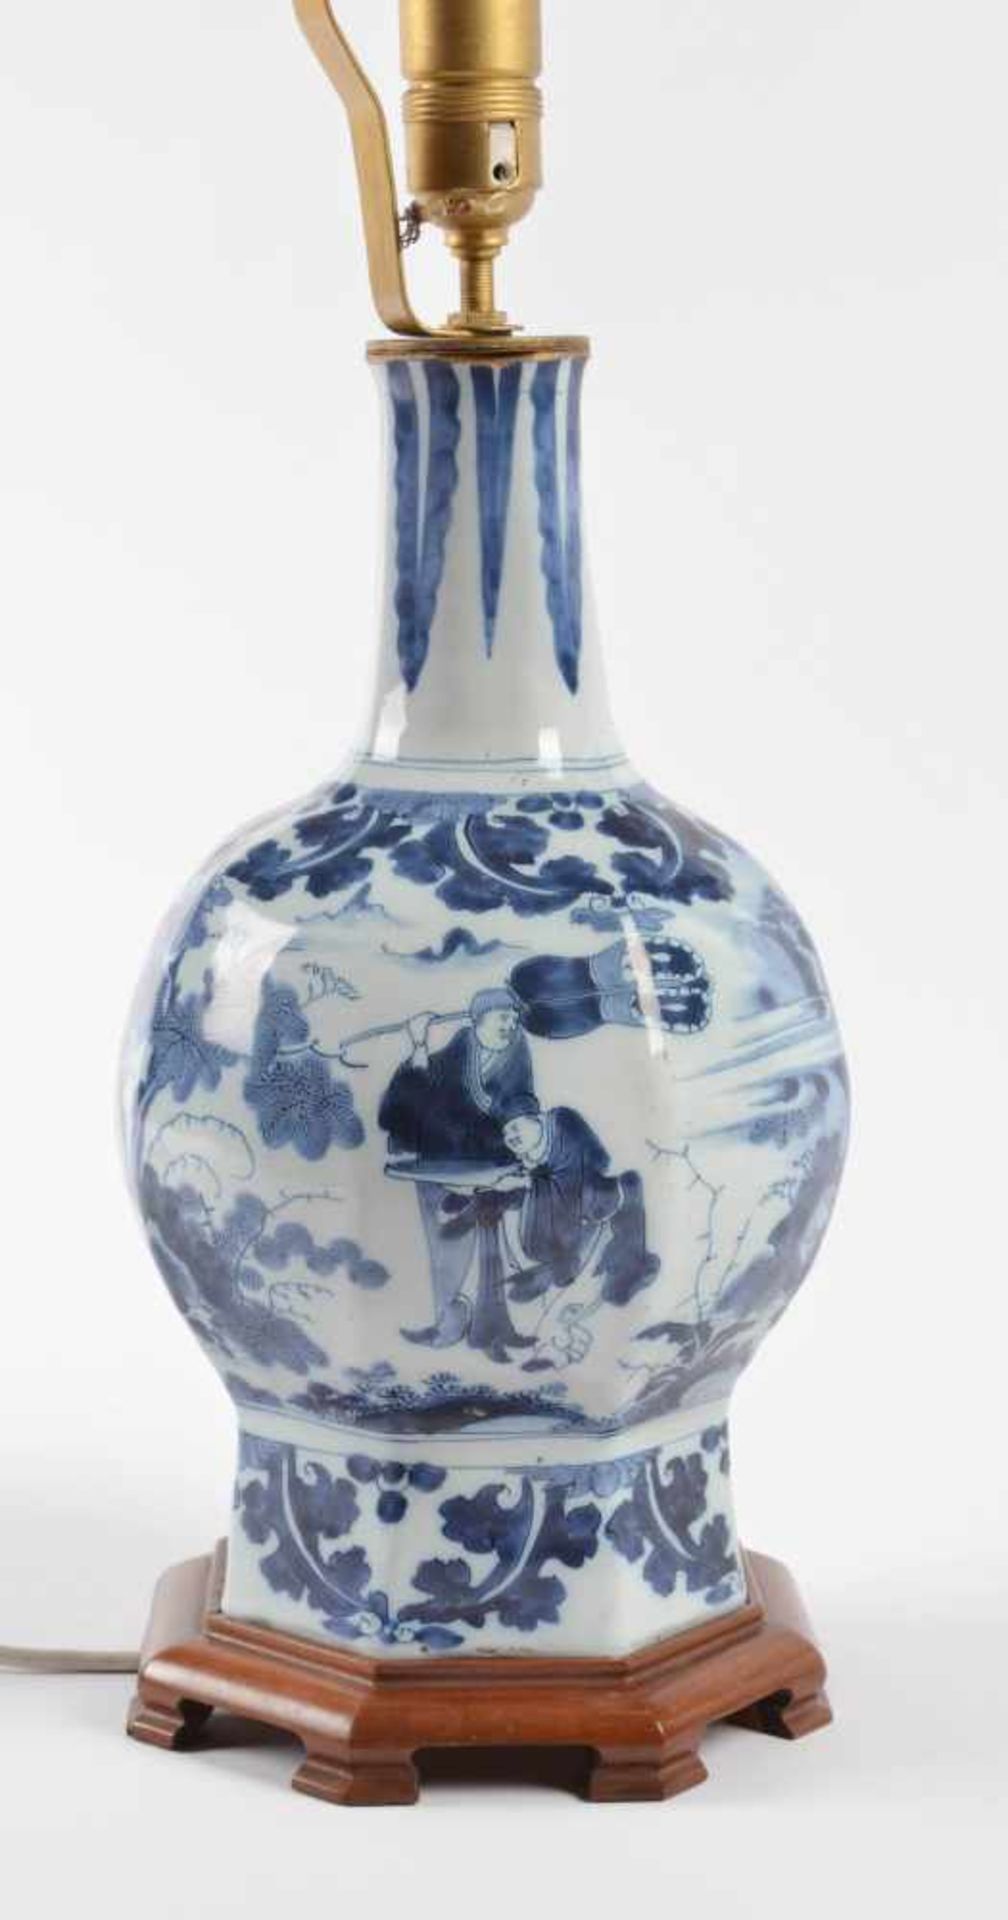 Lampe Delft 17. Jhd.blau und weiß Malerei mit chinesischem Dekor, ehemals Vase umgebaut zu einer - Bild 3 aus 4